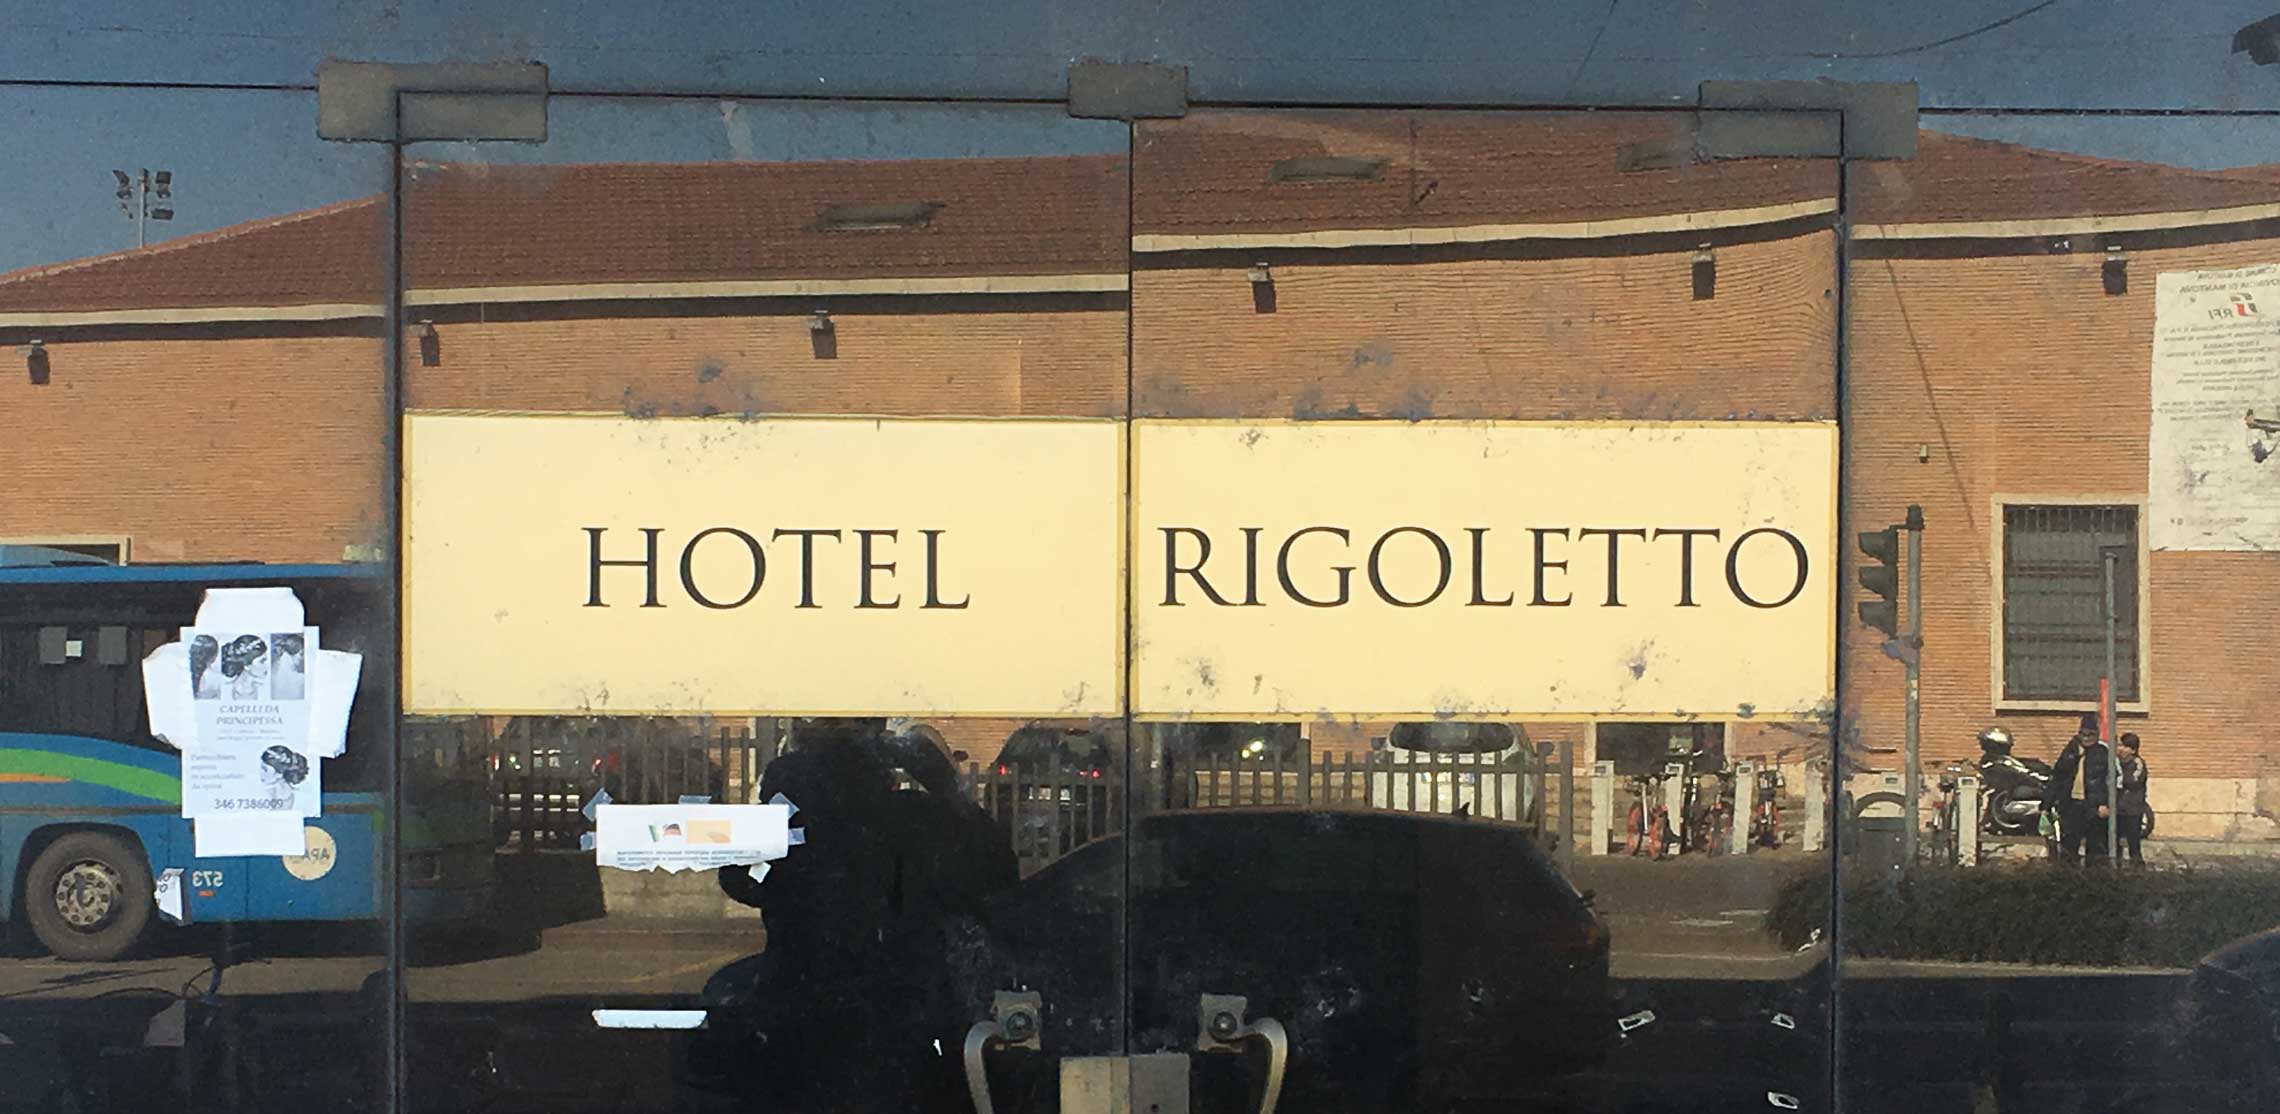 Mantua ist der Schauplatz der Oper Rigoletto von Verdi.